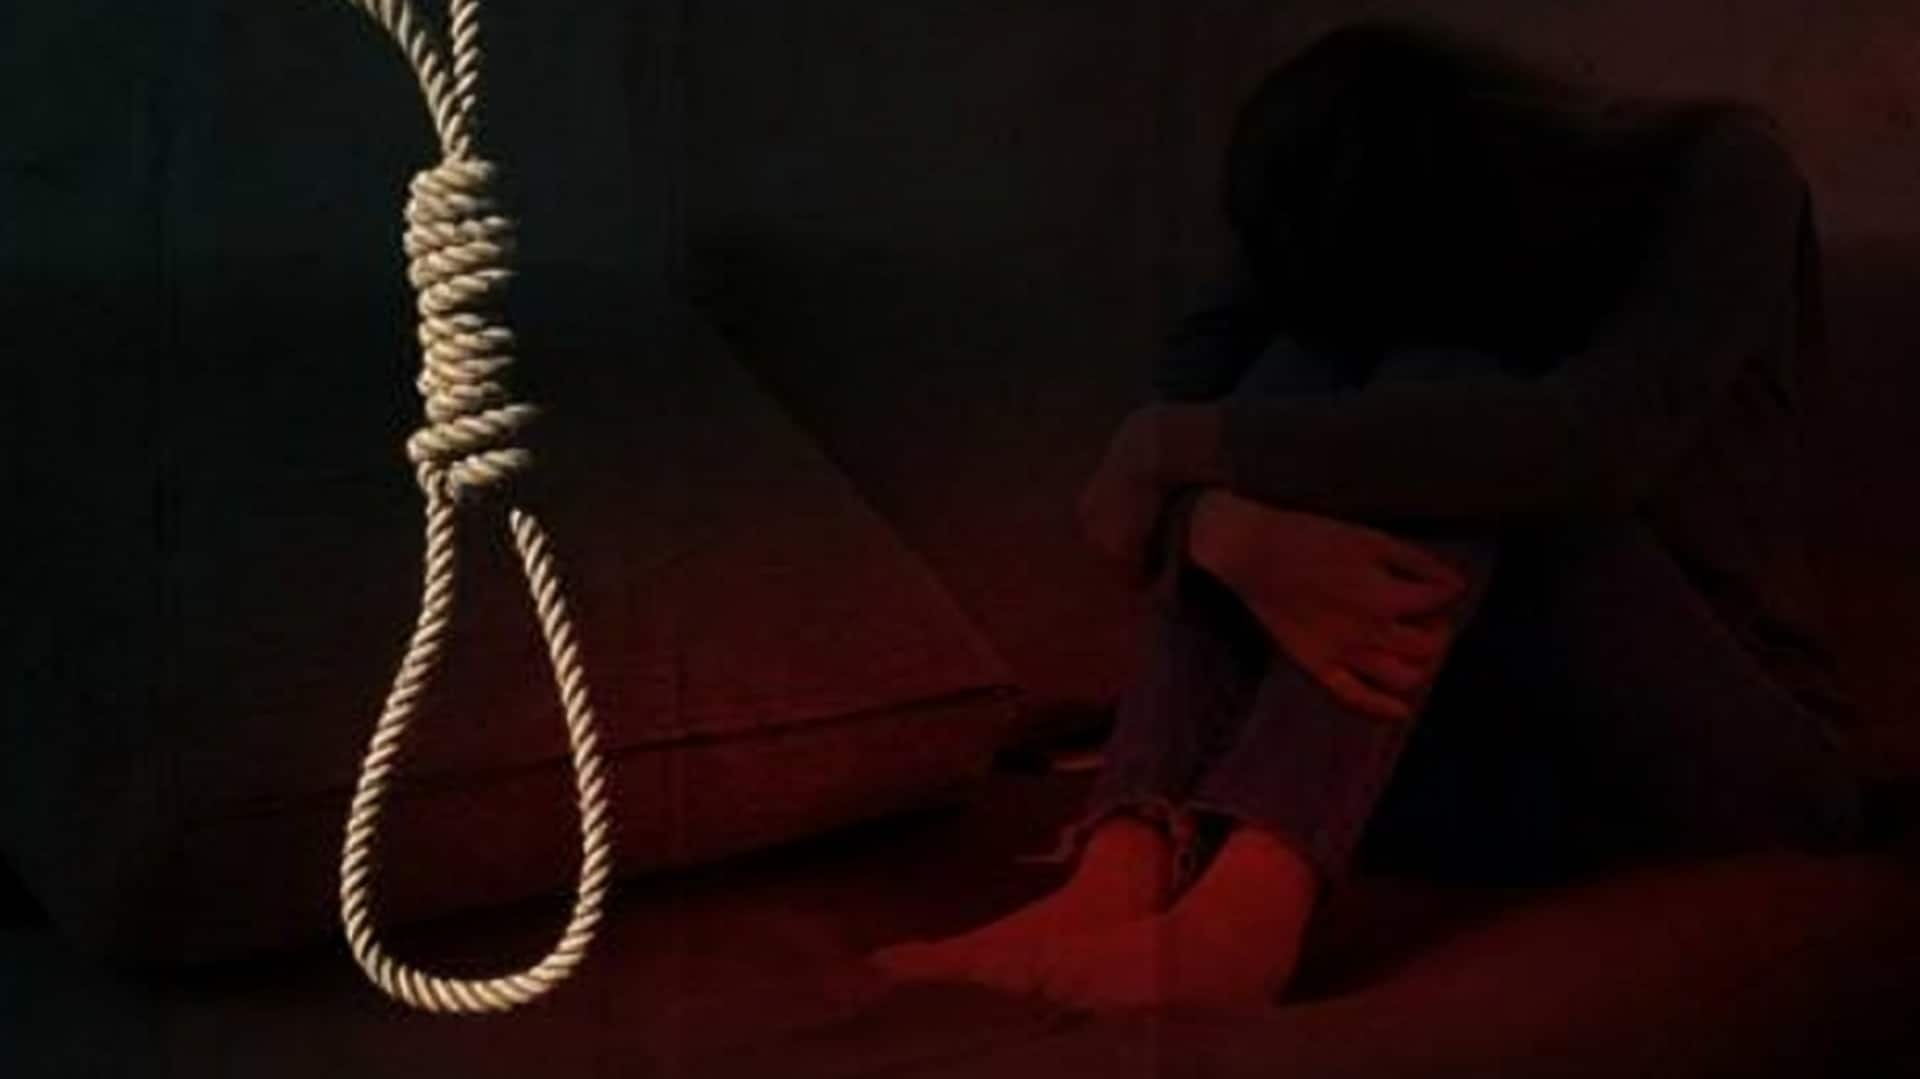 IIT कानपुर की PhD छात्रा ने फांसी लगाकर खुदकुशी की, 1 महीने में तीसरी आत्महत्या